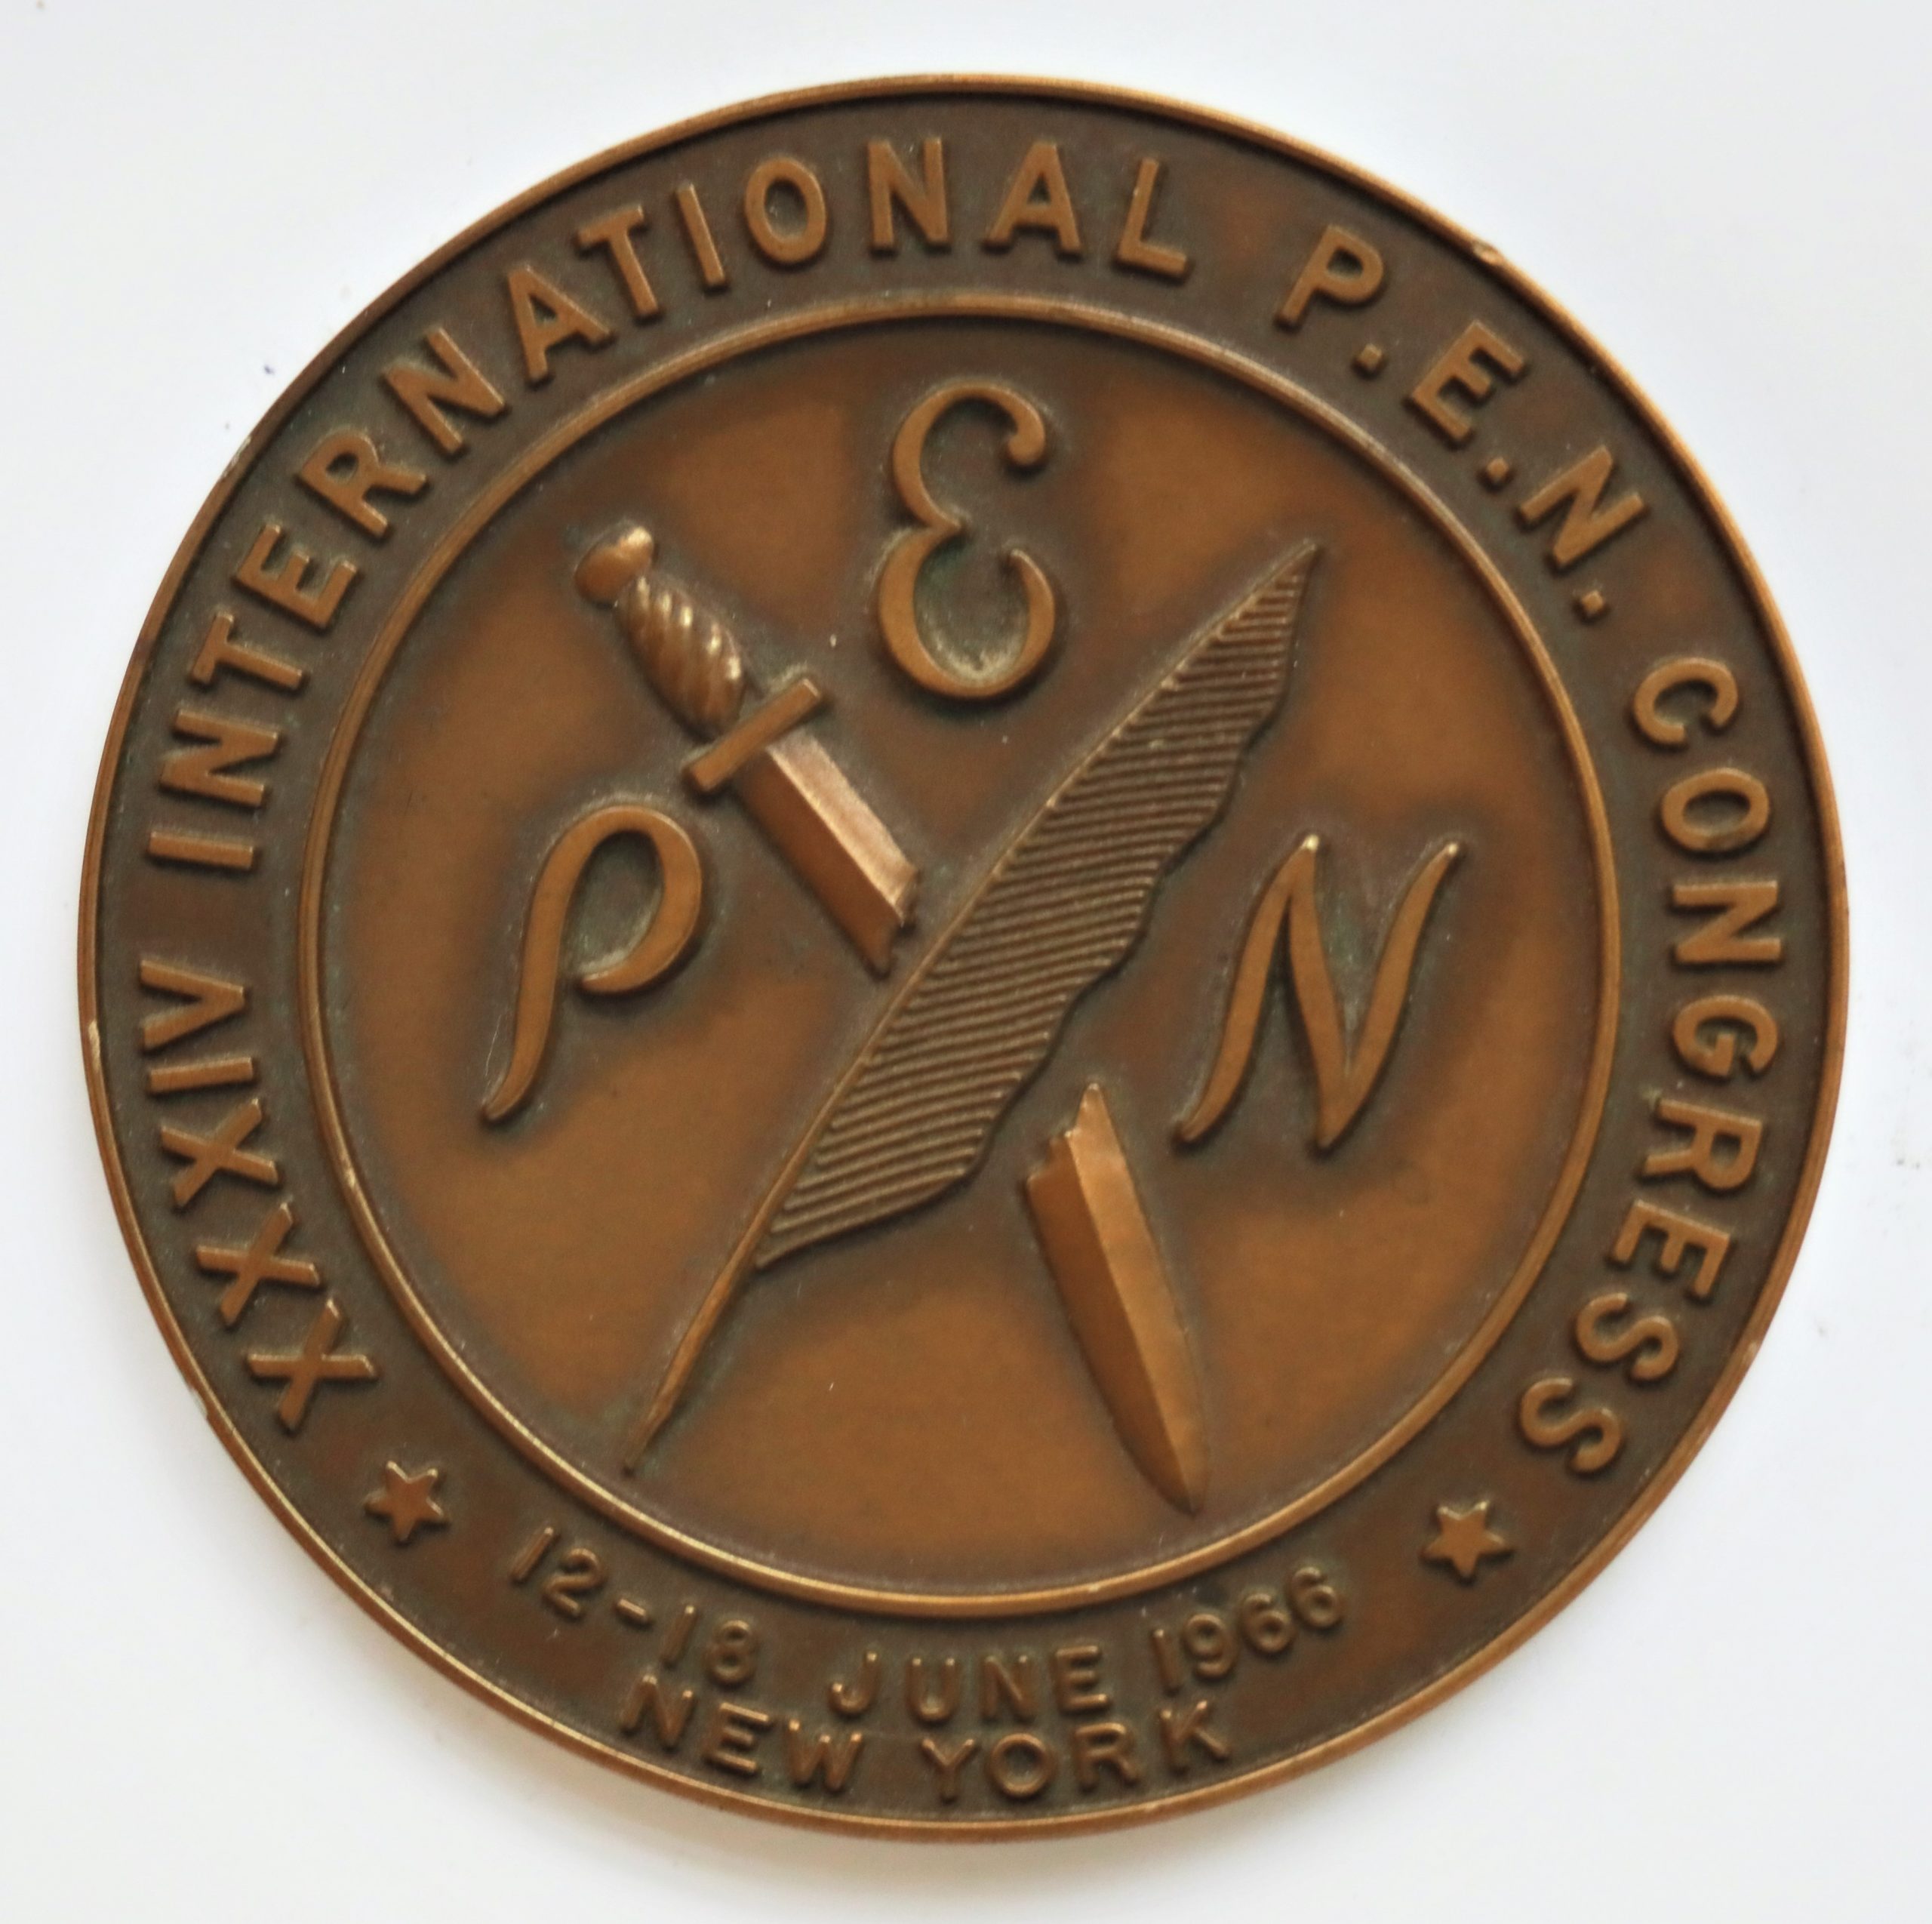 PEN klubo medalis, išleistas ir S. Santvarui įteiktas tarptautinio klubo kongreso 1966 m. proga. MLLM 120816